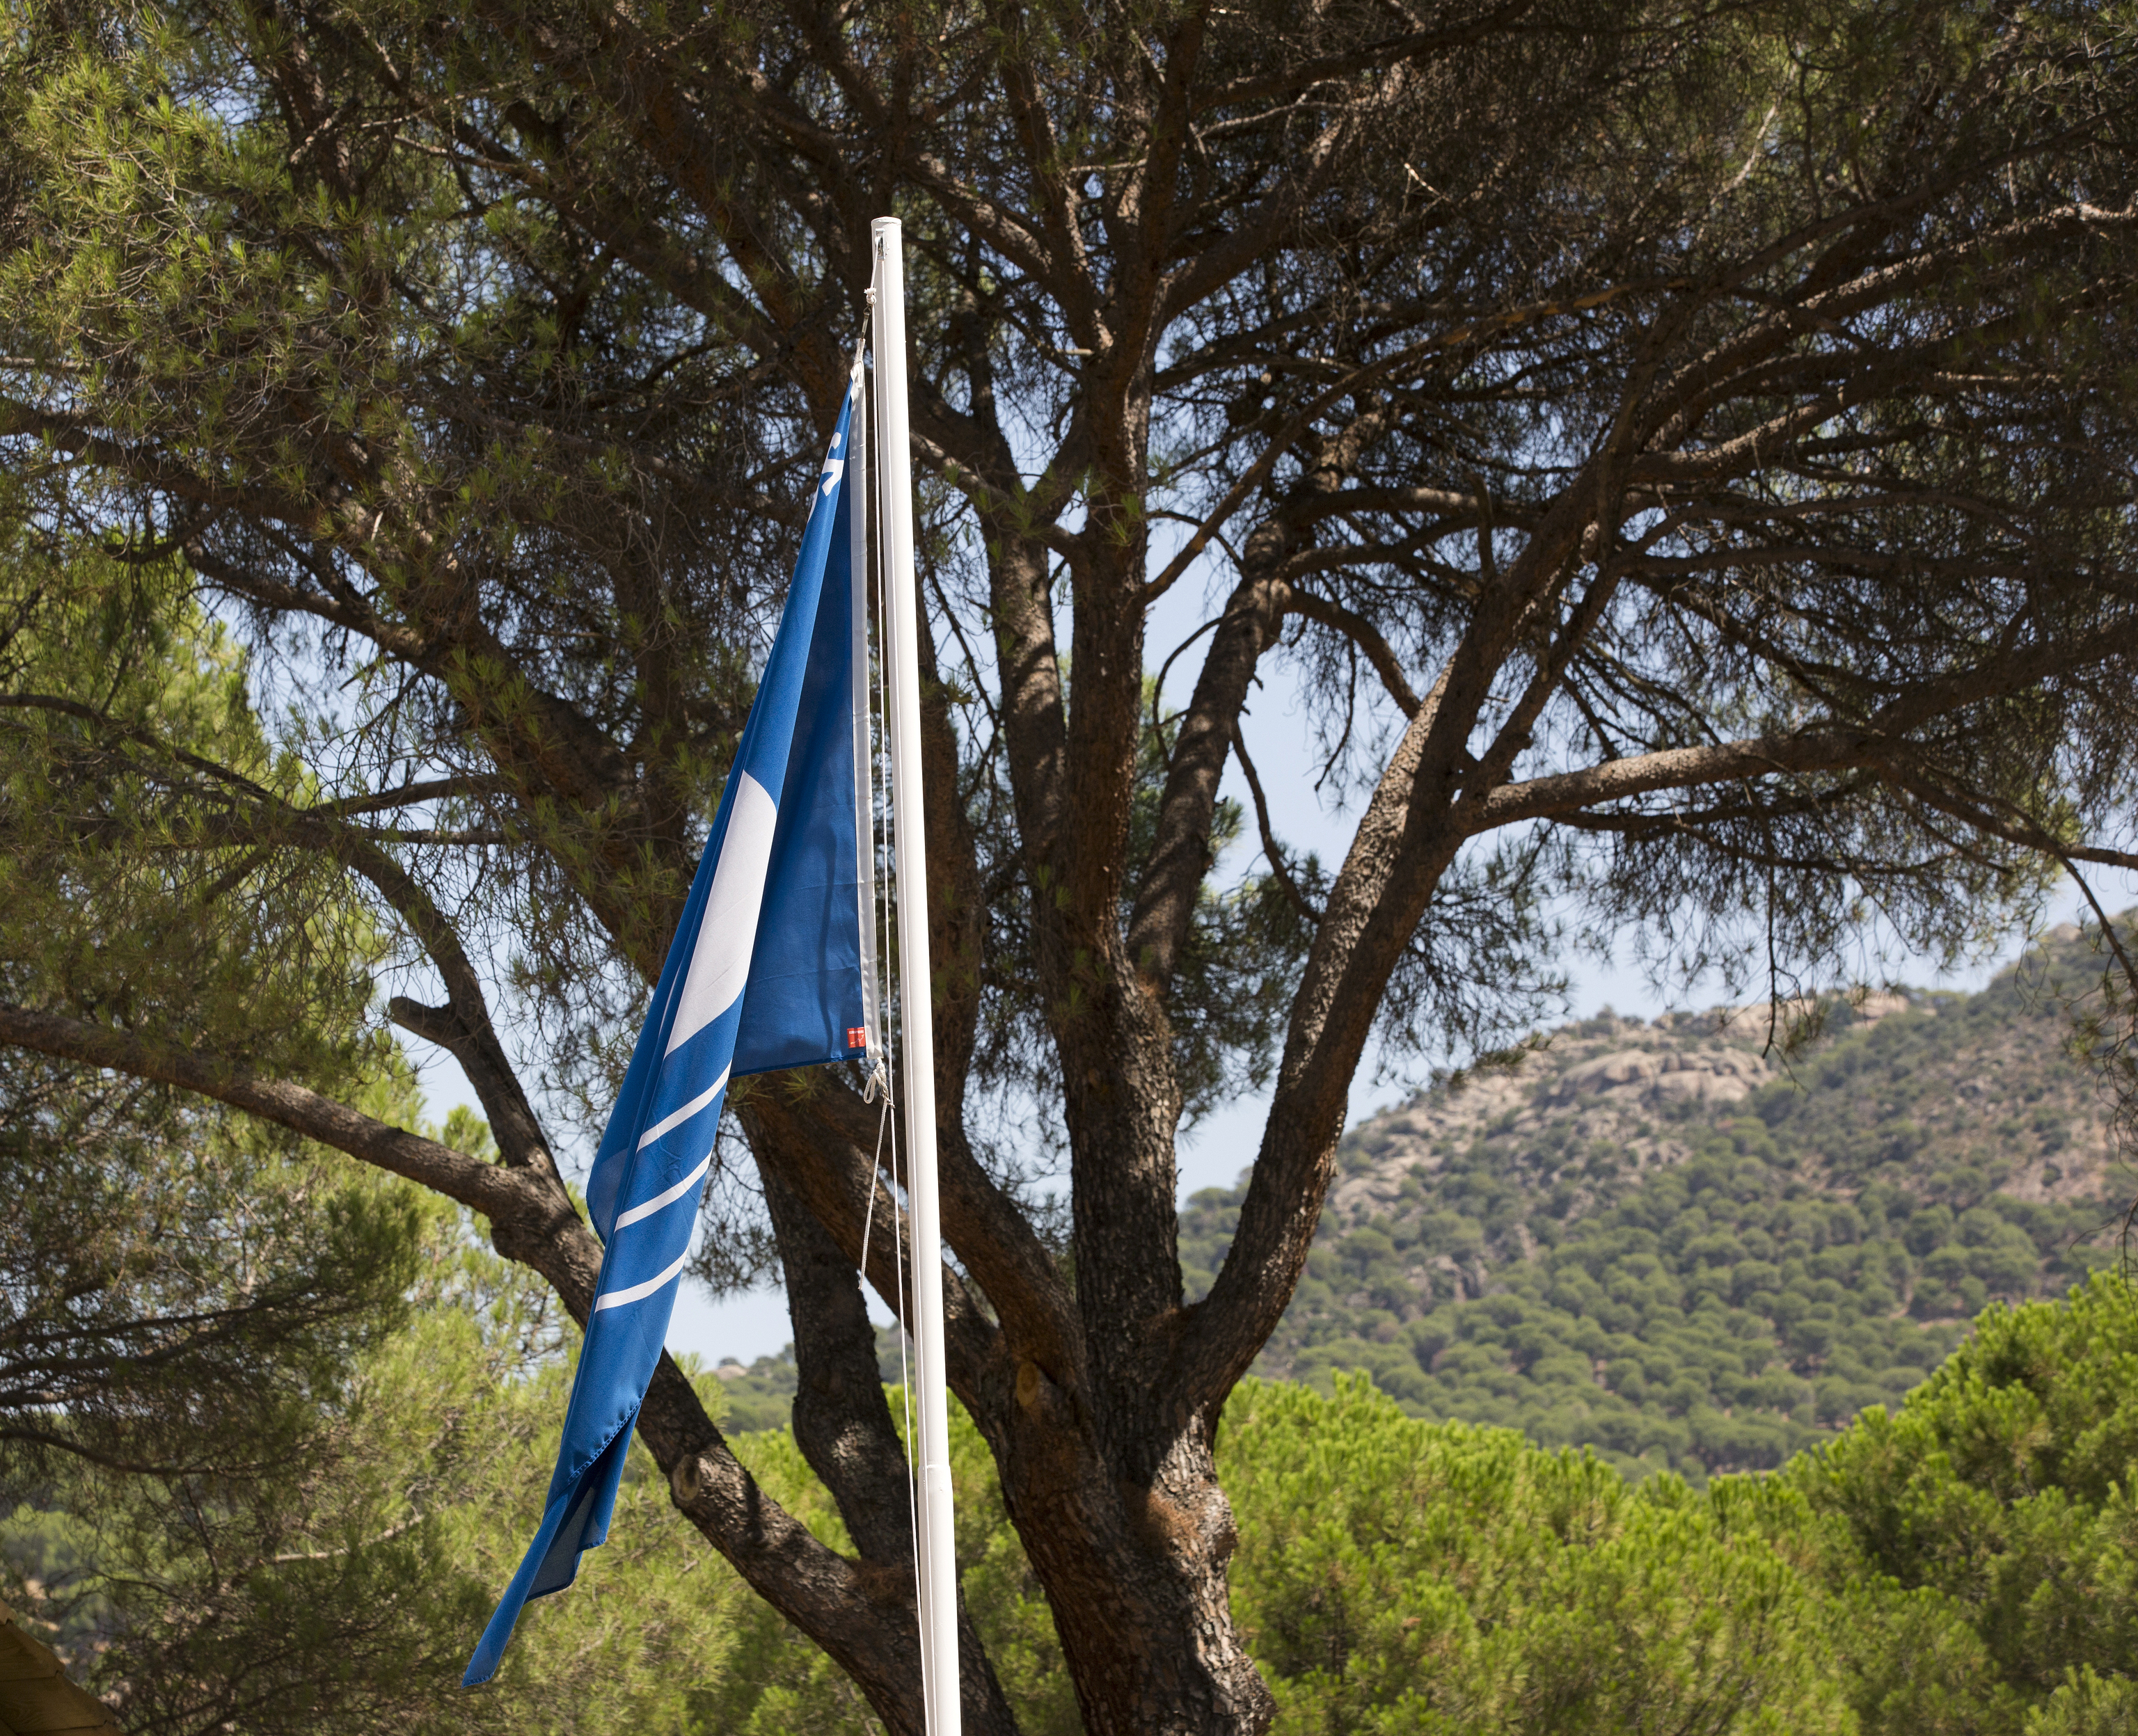 La bandera azul vuelve un año más a ondear en la playa de Virgen de la Nueva. Foto Javi Martínez.